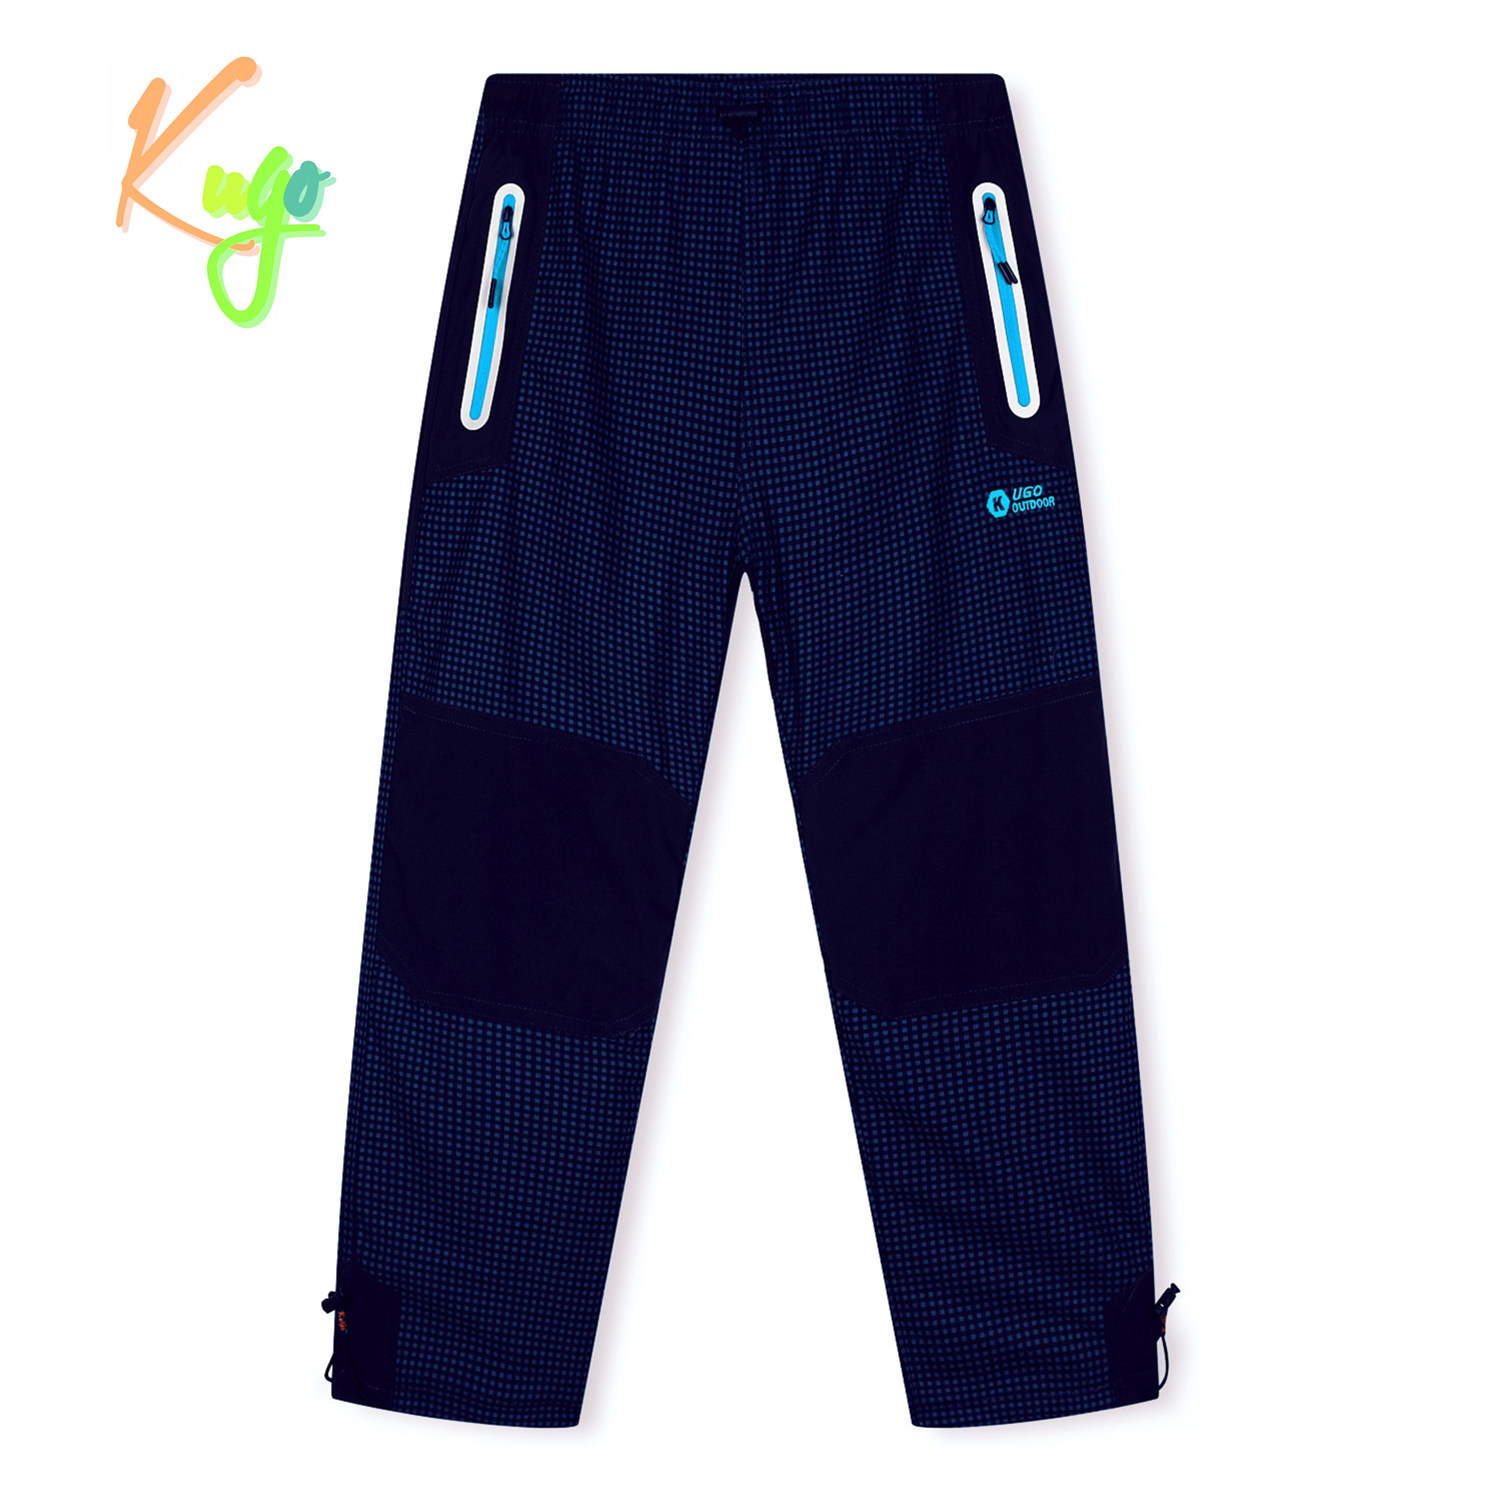 Chlapecké zateplené outdoorové kalhoty - KUGO C7775, modrá/ signální zipy Barva: Modrá, Velikost: 146